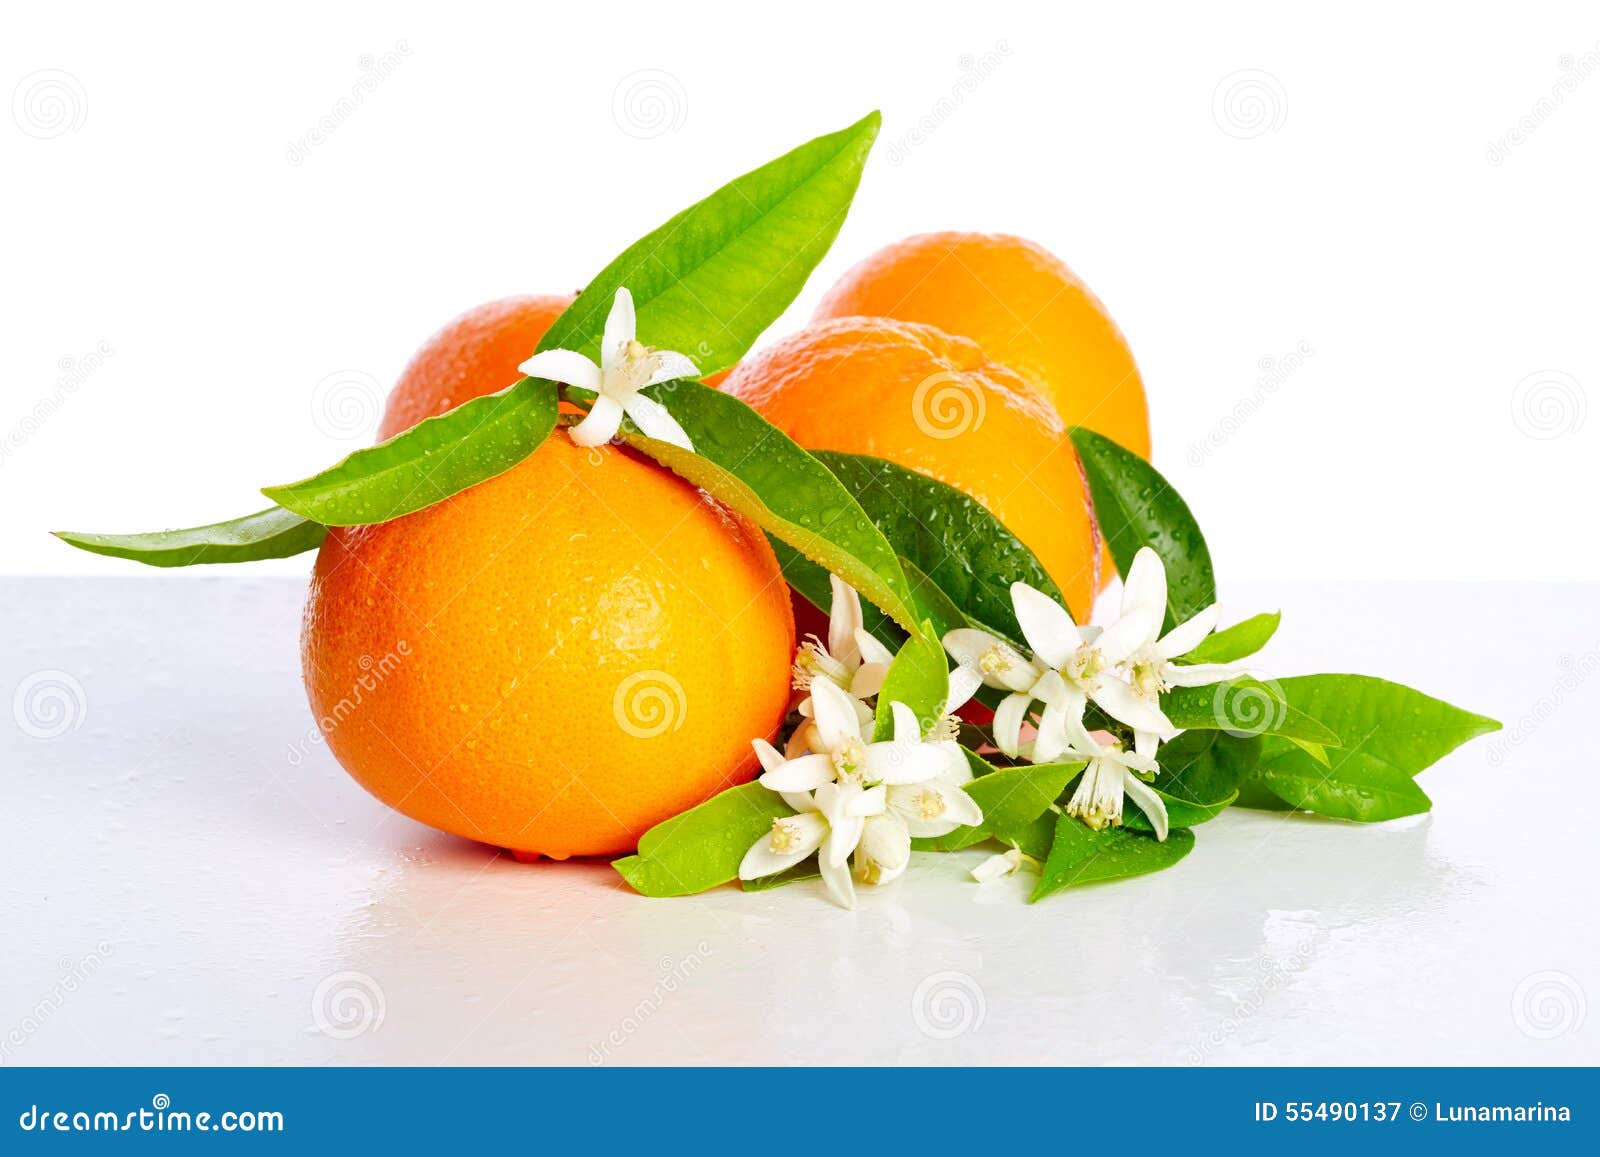 Pomarańcze z pomarańczowym okwitnięciem kwitną na bielu. Pomarańcze z pomarańczowym okwitnięciem kwitną w wiośnie na białym tle